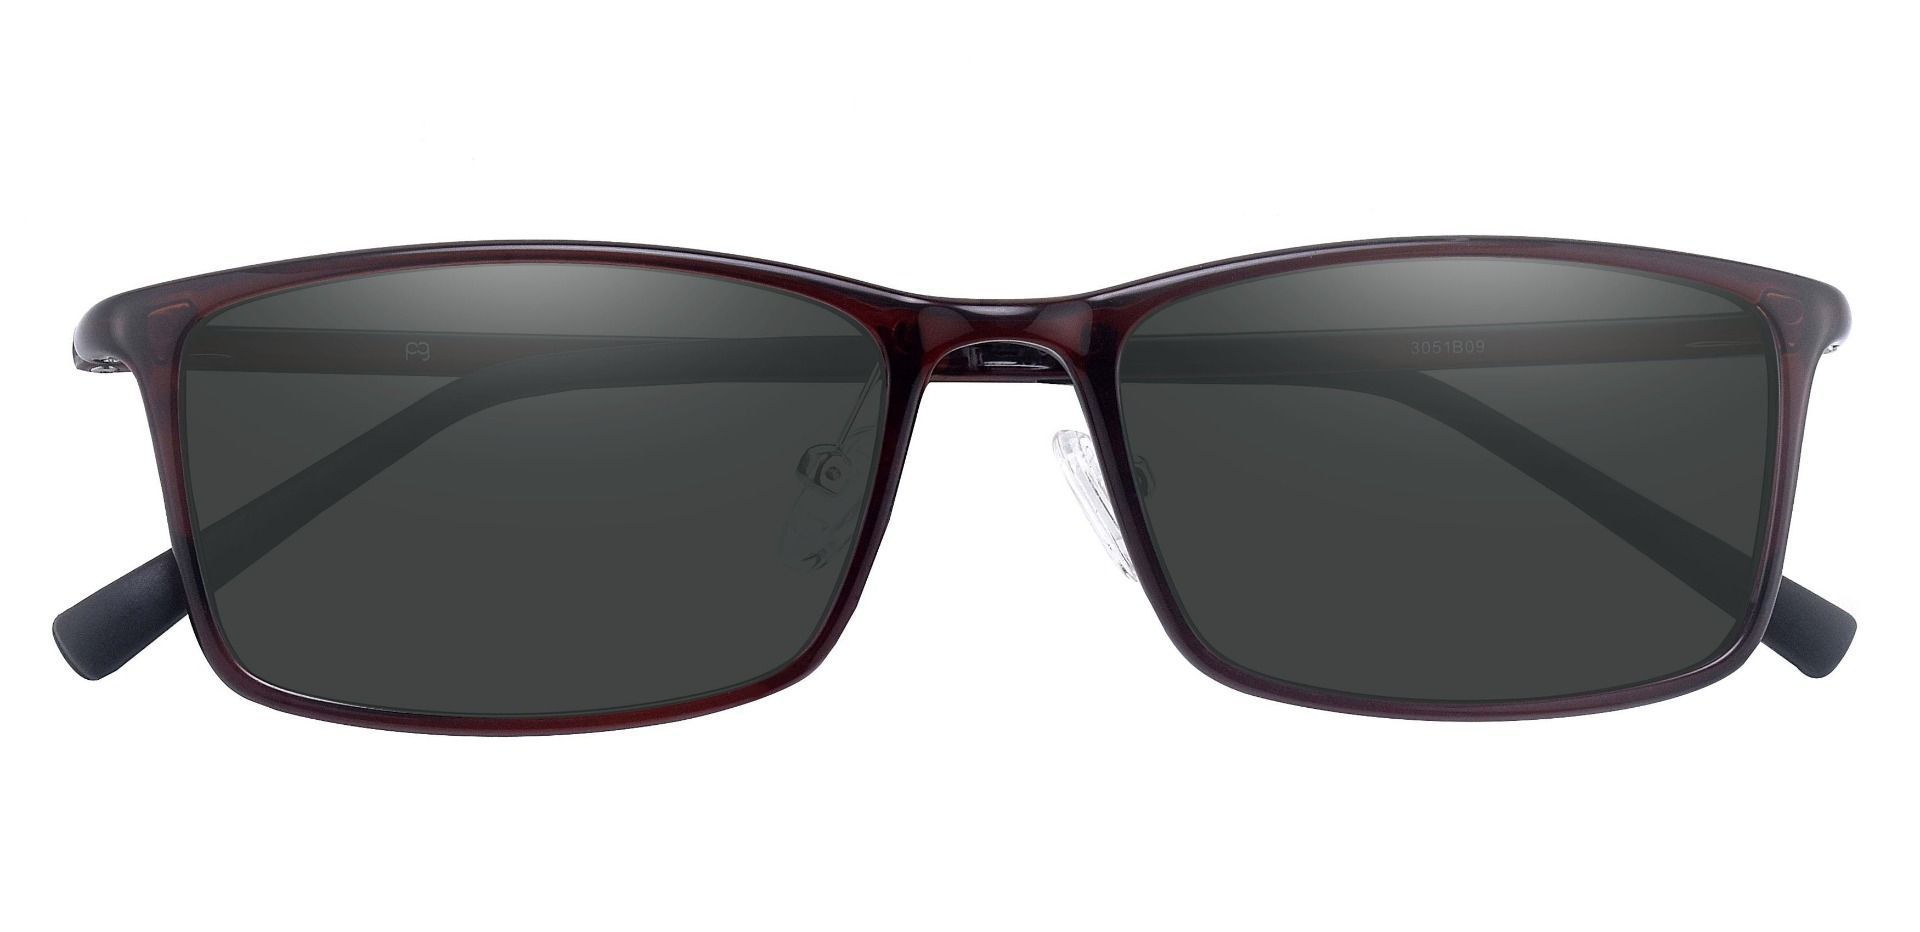 Cedar Rectangle Non-Rx Sunglasses - Brown Frame With Gray Lenses ...